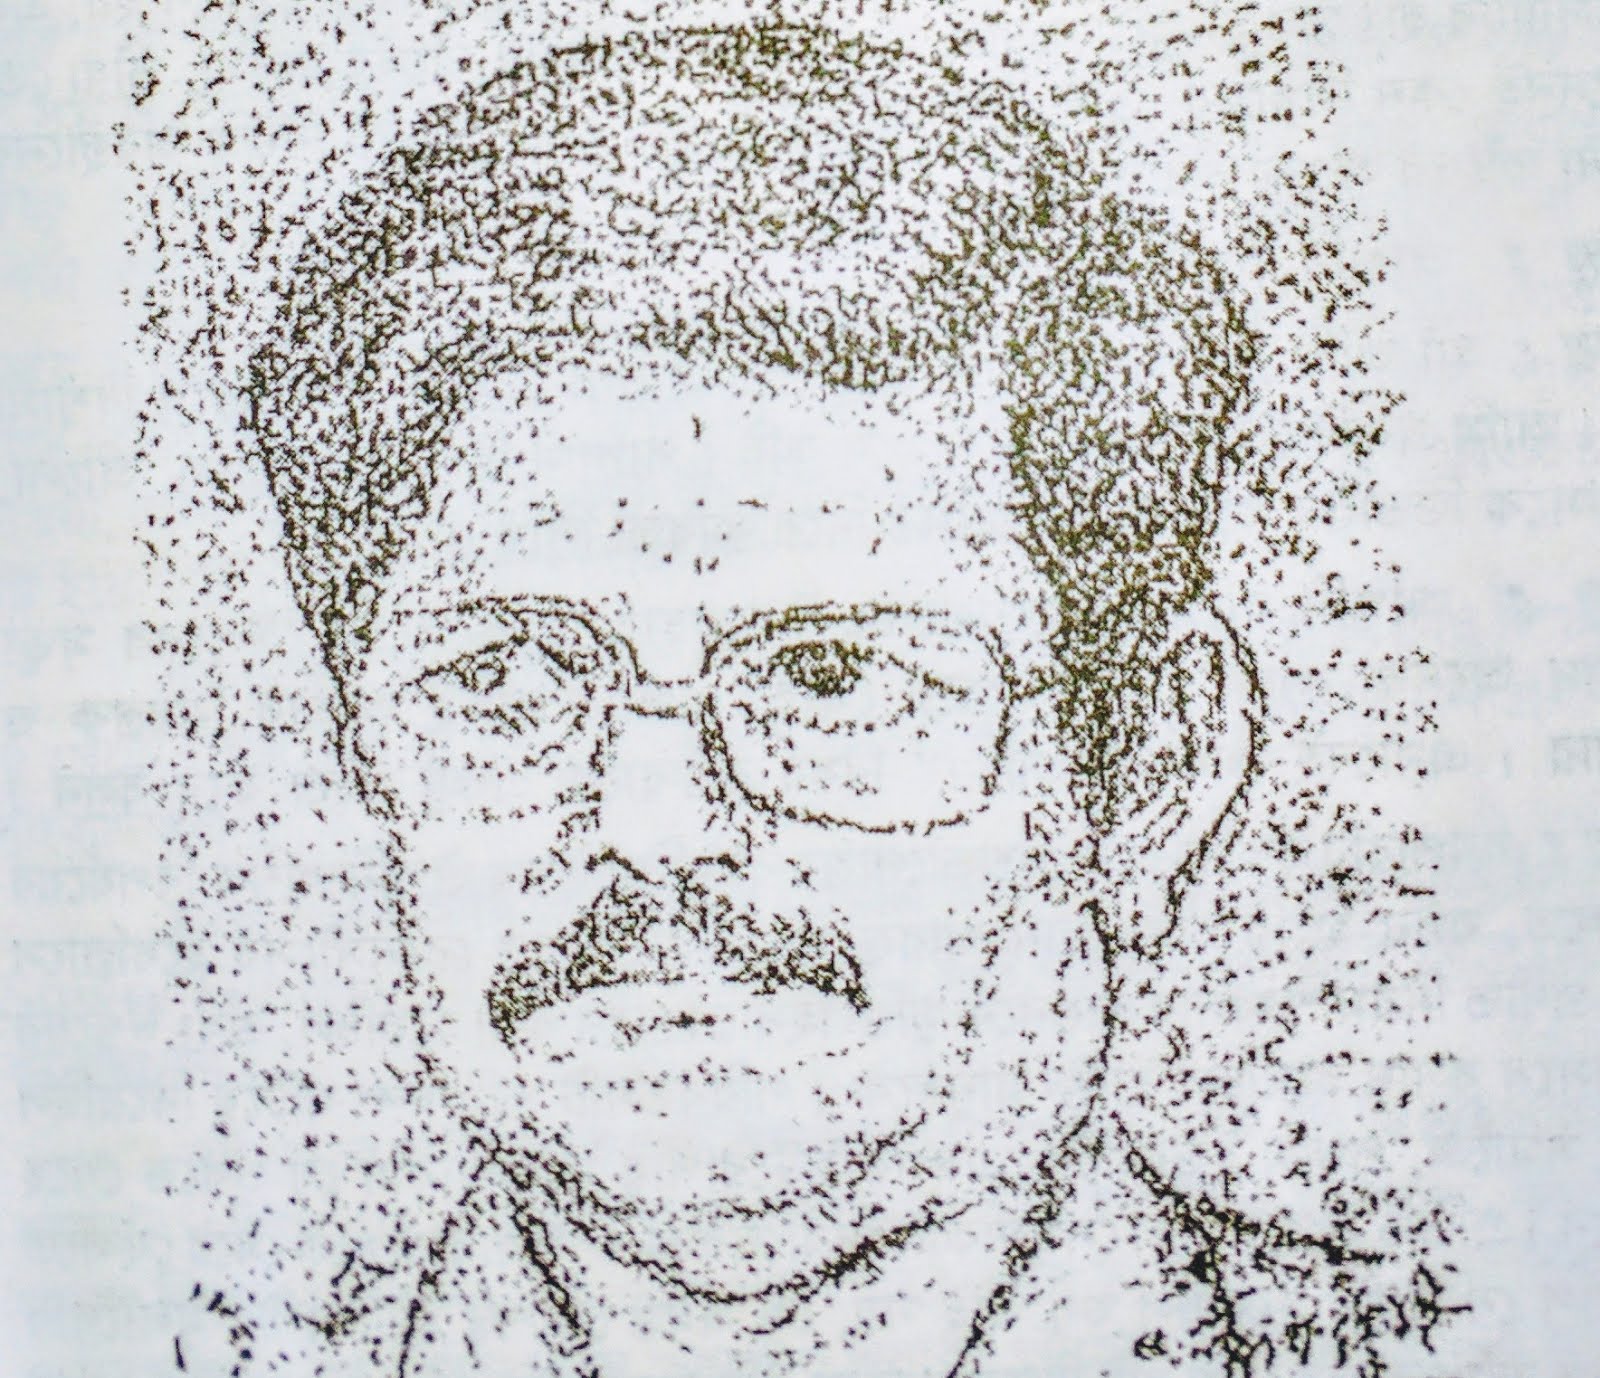 Malay Roychoudhury's portrait by Anil Karanjai